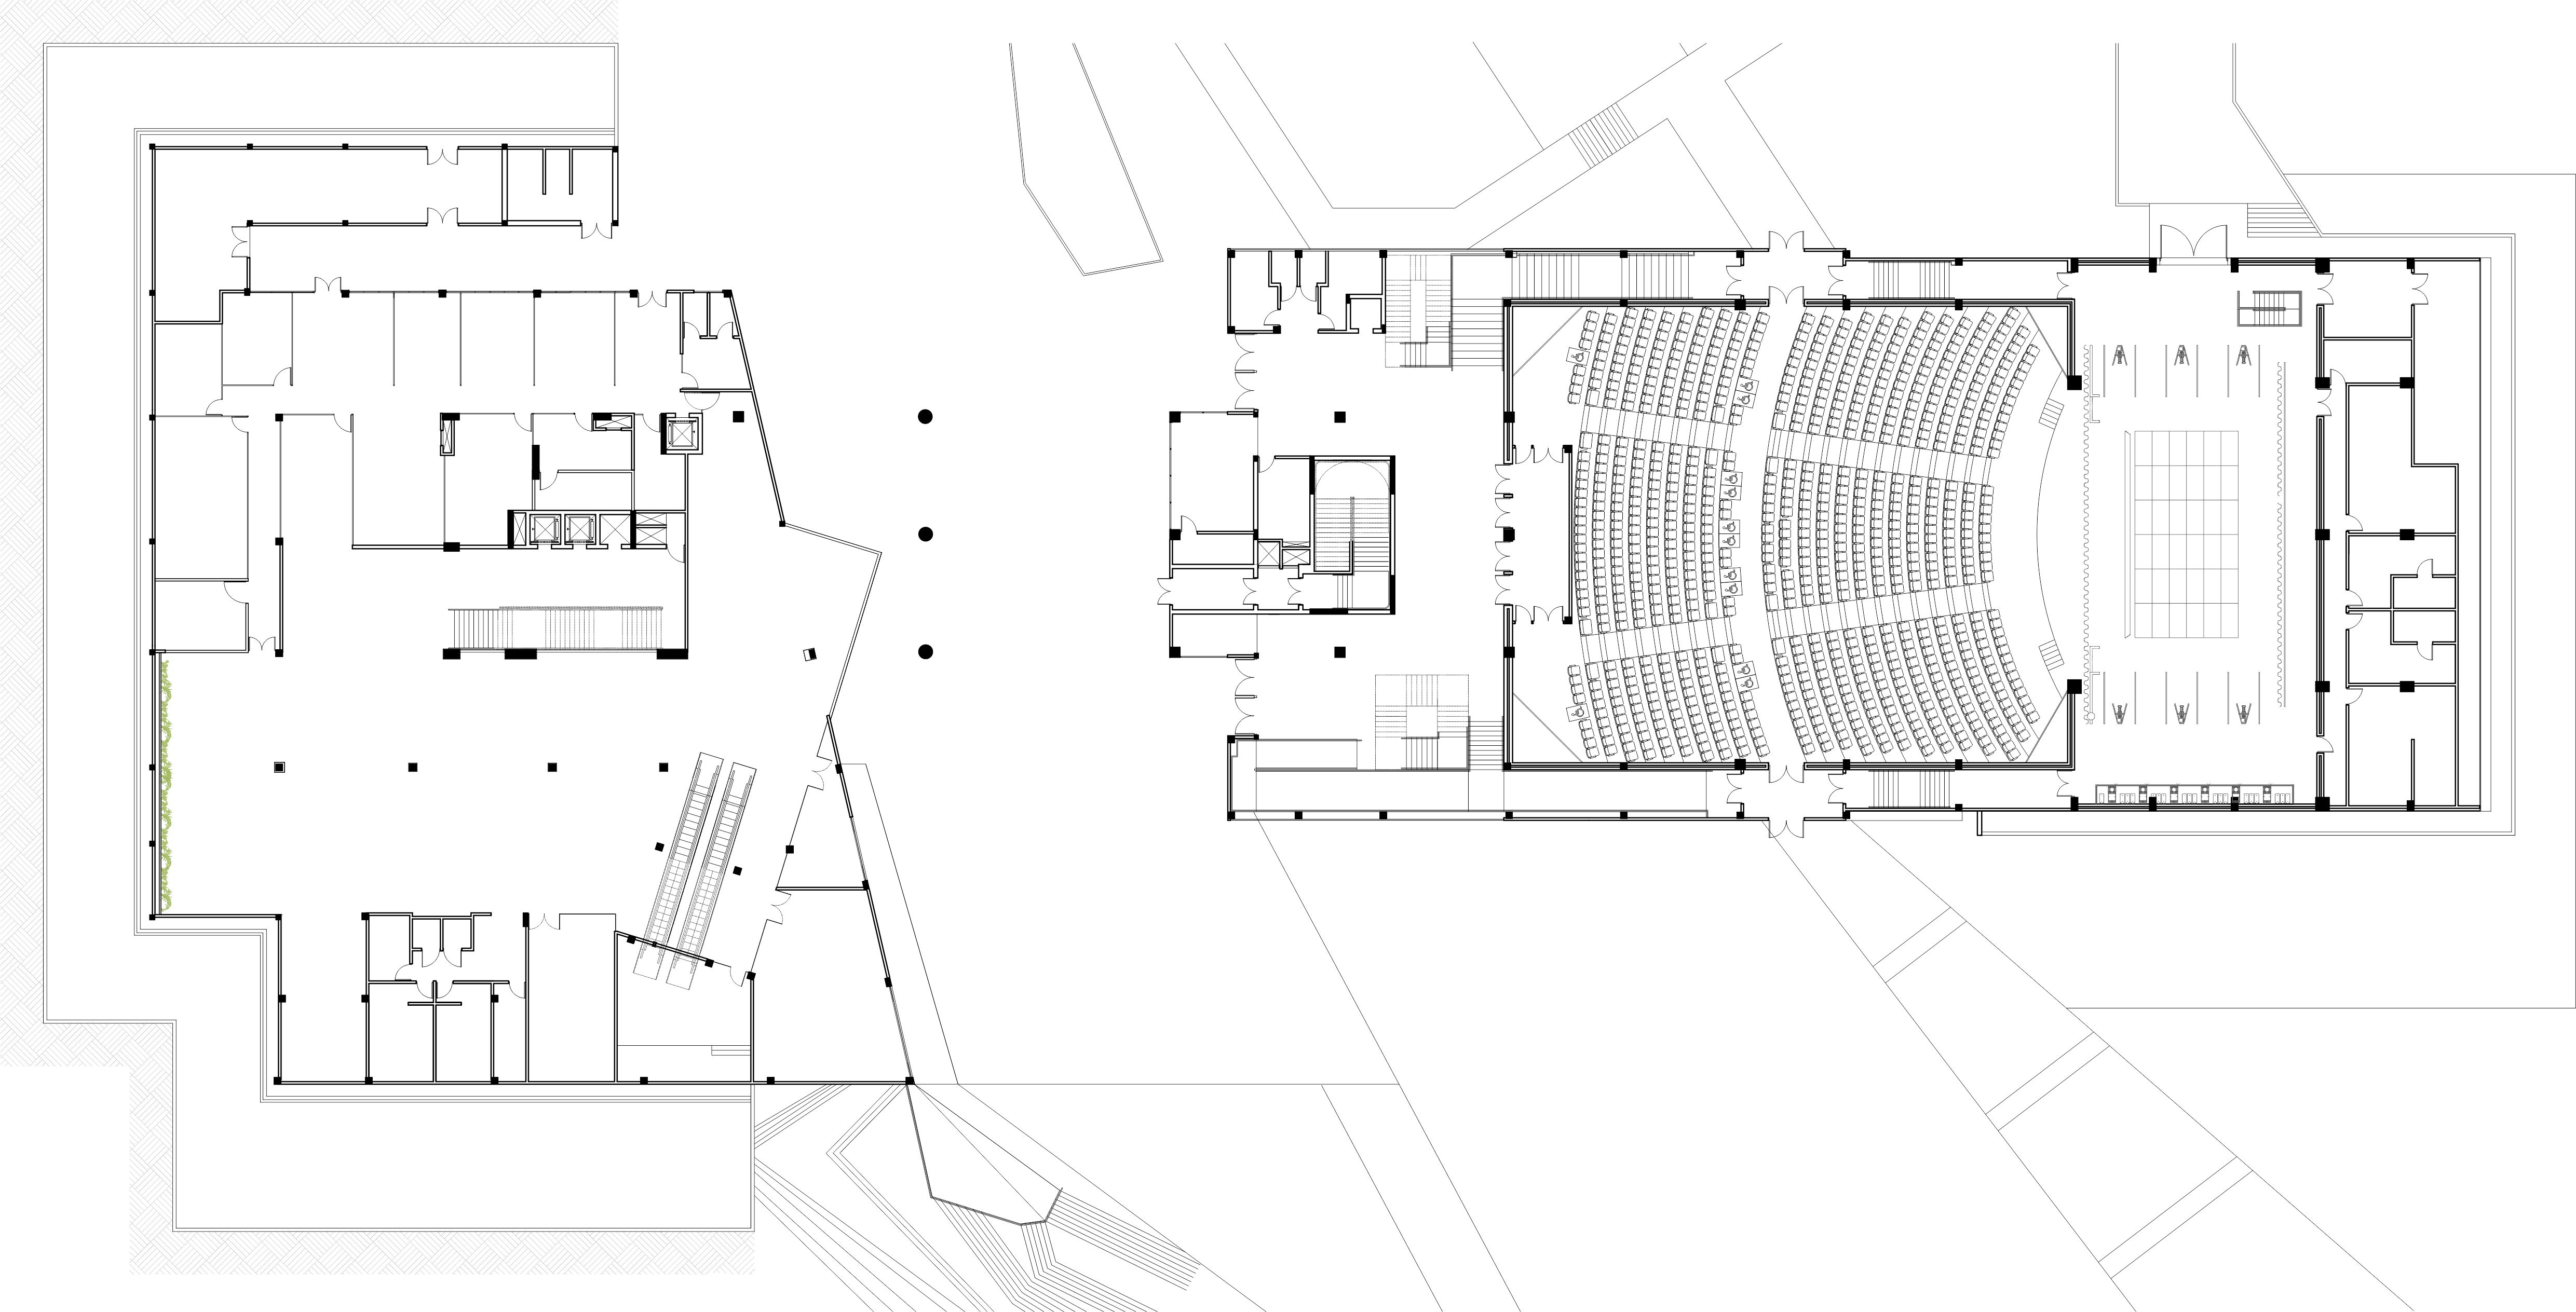 Проект концертного зала. Культурный центр univates / Tartan Arquitetura e Urbanismo. Cultural Center univates Tartan. План концертного зала чертежи. Концертный зал планировка.